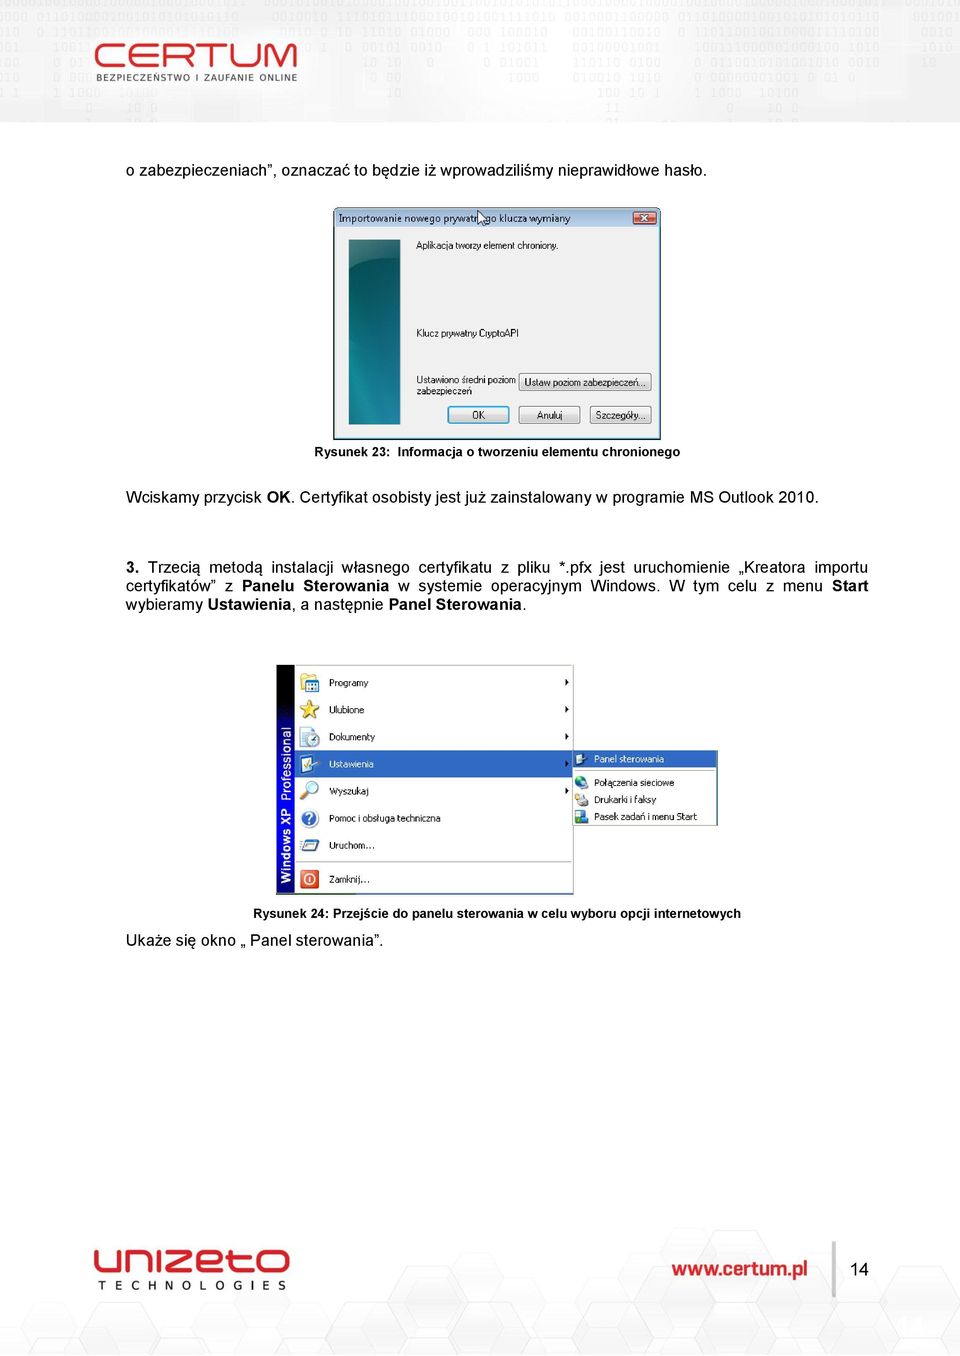 Certyfikat osobisty jest już zainstalowany w programie MS Outlook 2010. 3. Trzecią metodą instalacji własnego certyfikatu z pliku *.